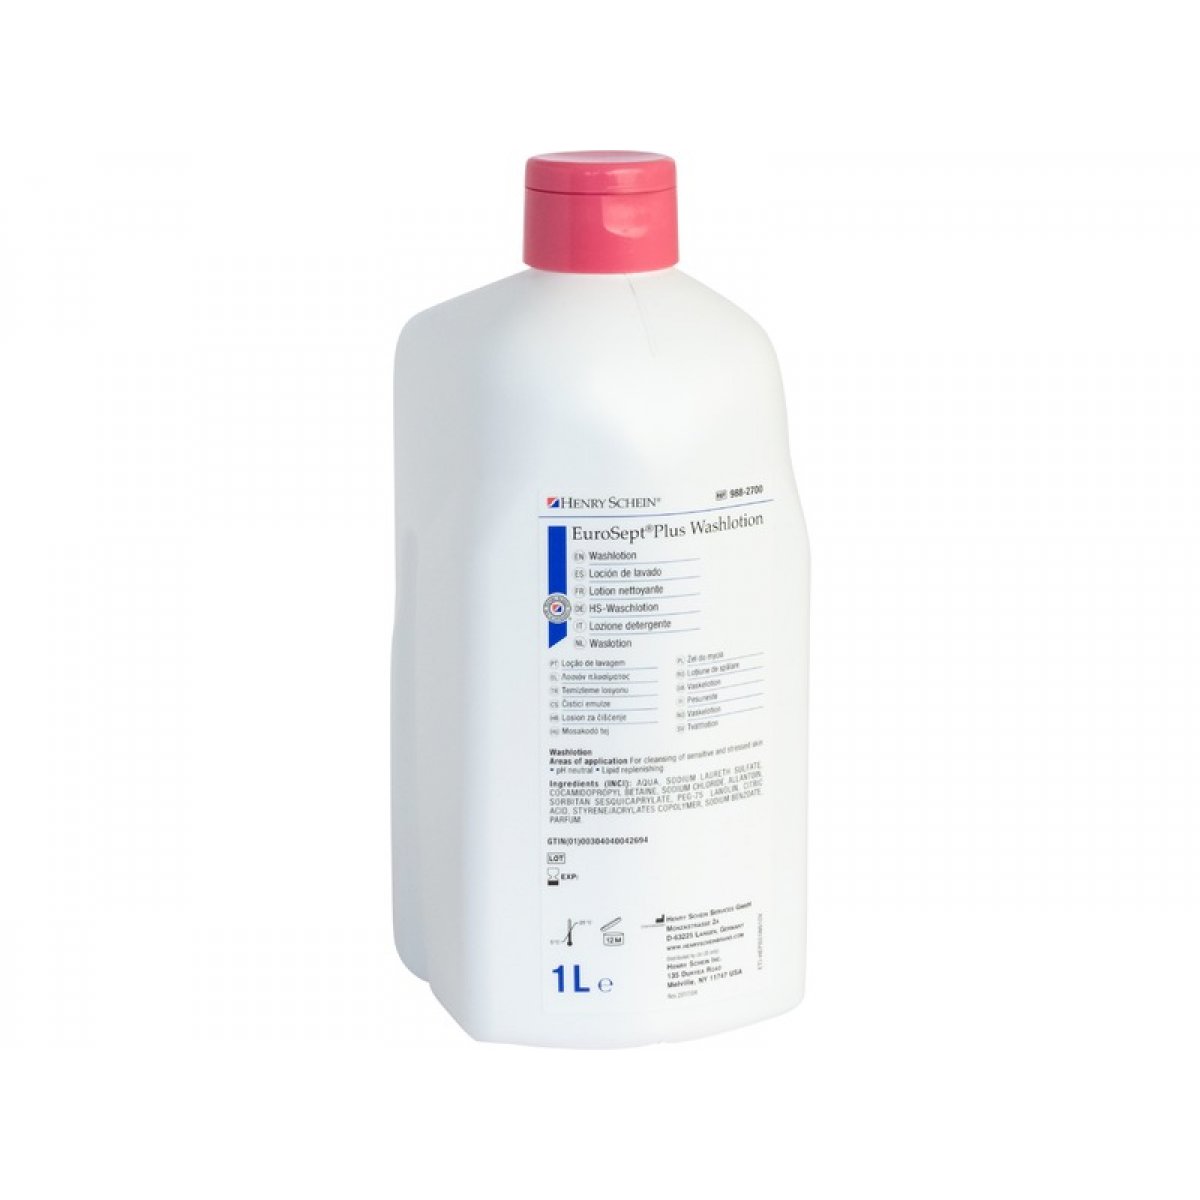 Baktolan cream, 100ml, HENRY SCHEIN Medical